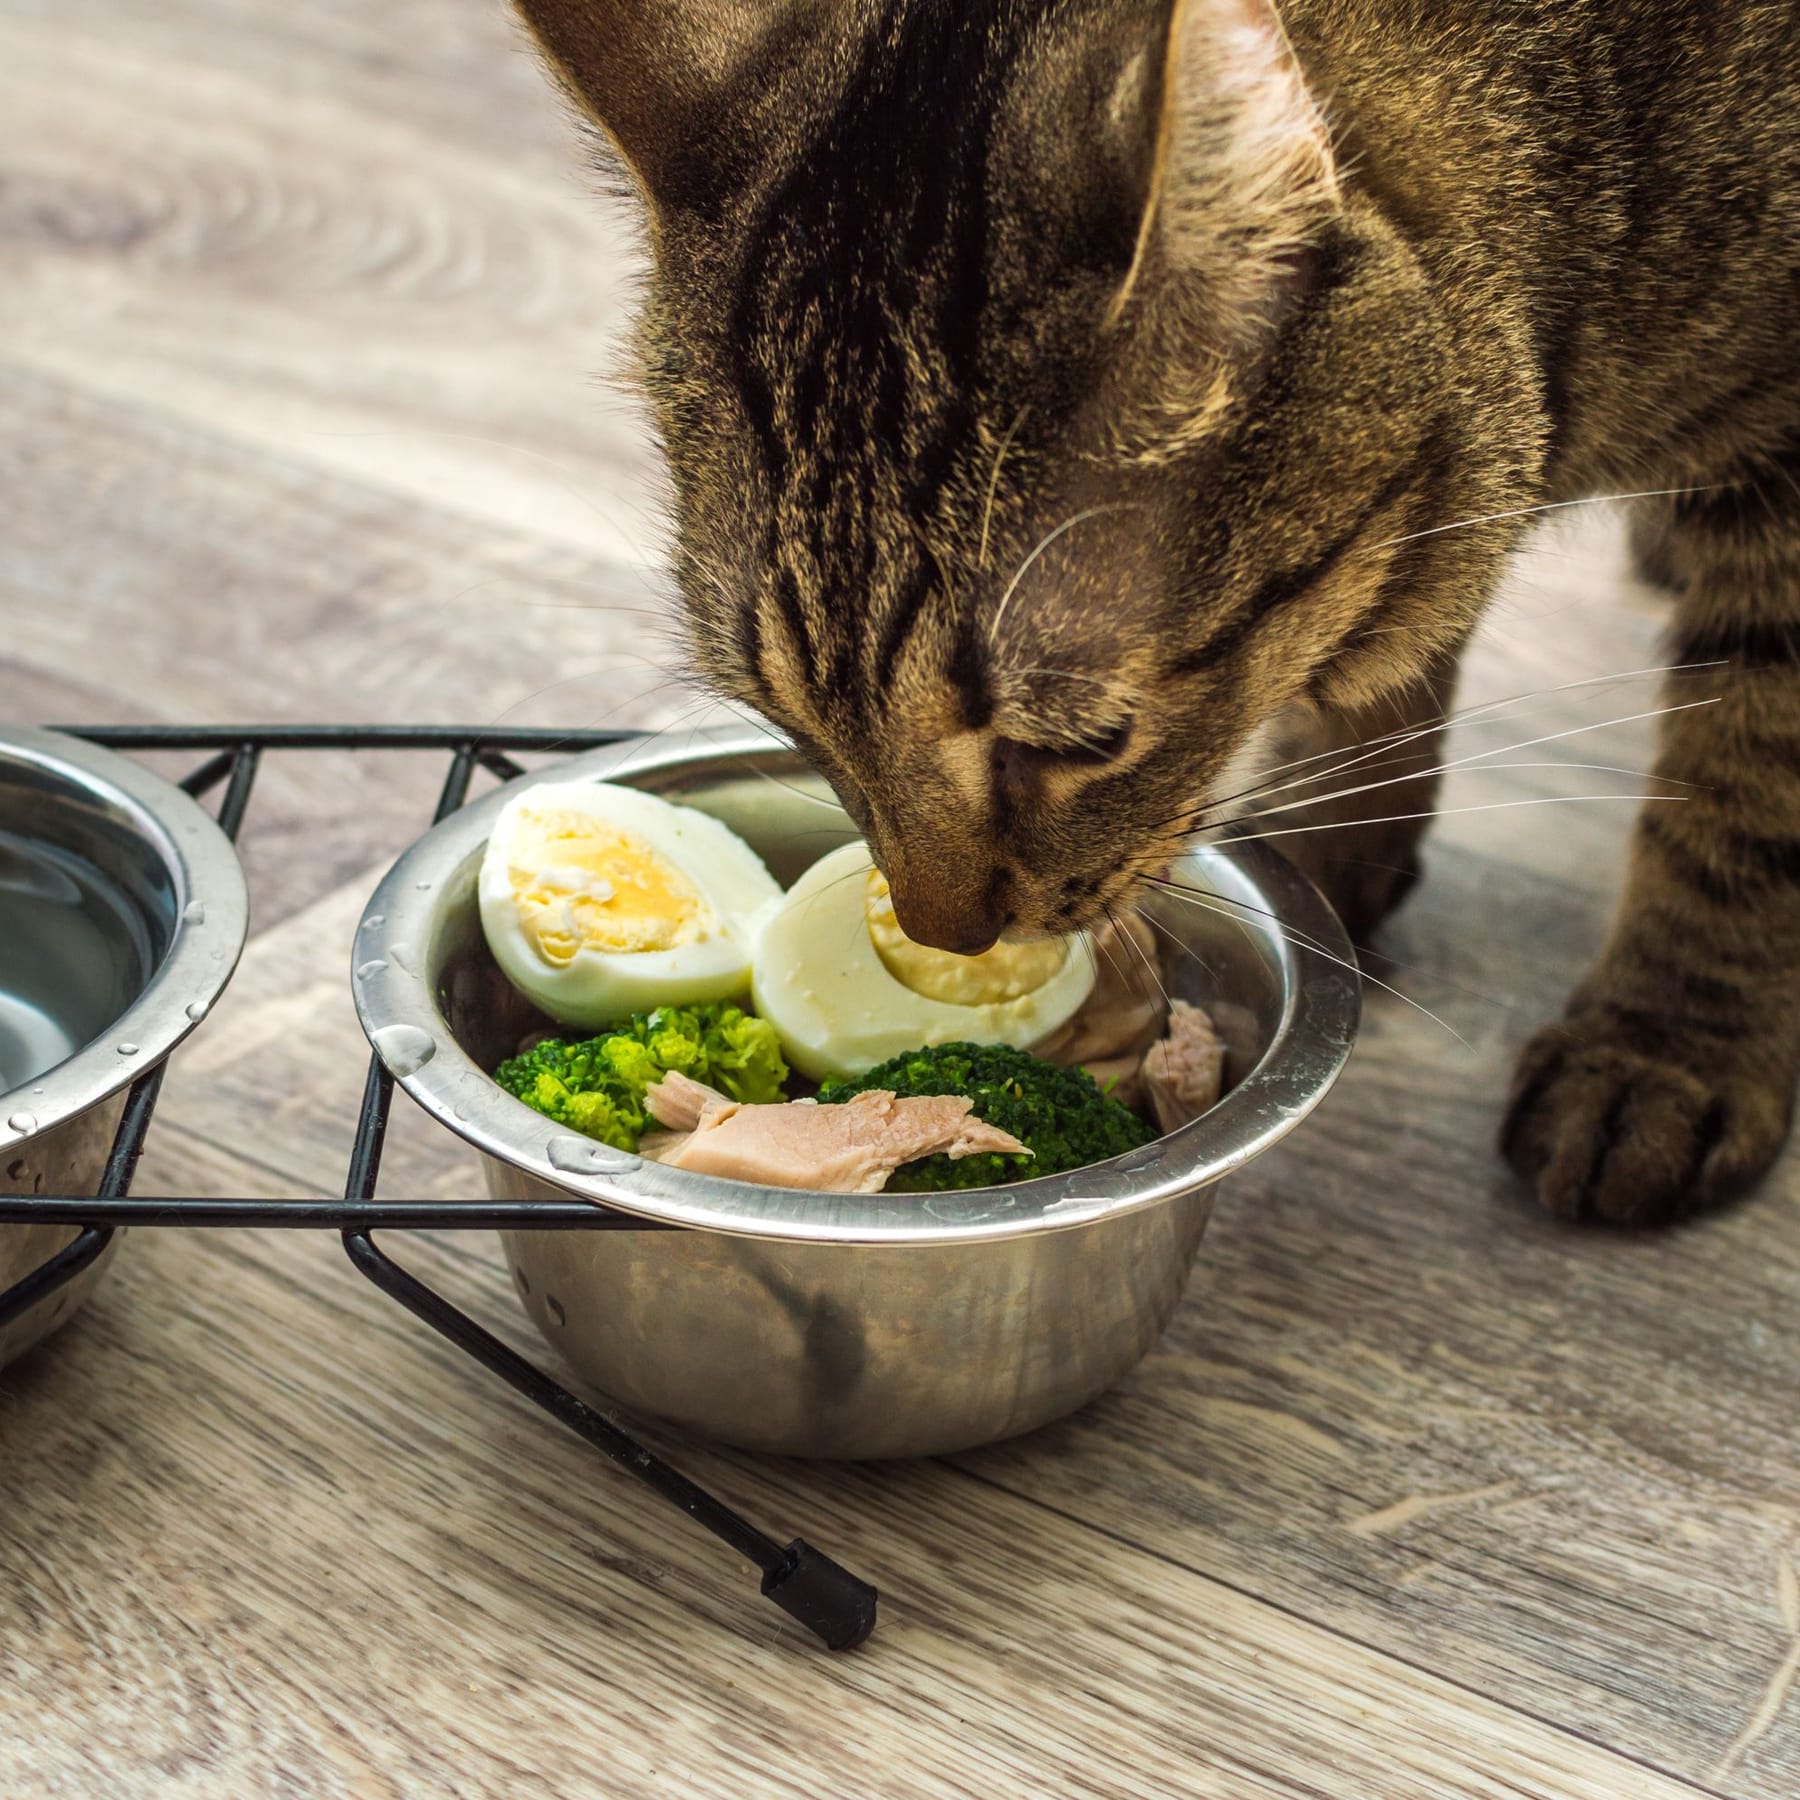 Кушает яички. Кошка кушает. Кошка ест яичницу. Кот ест яйца вареные. Кот ест.